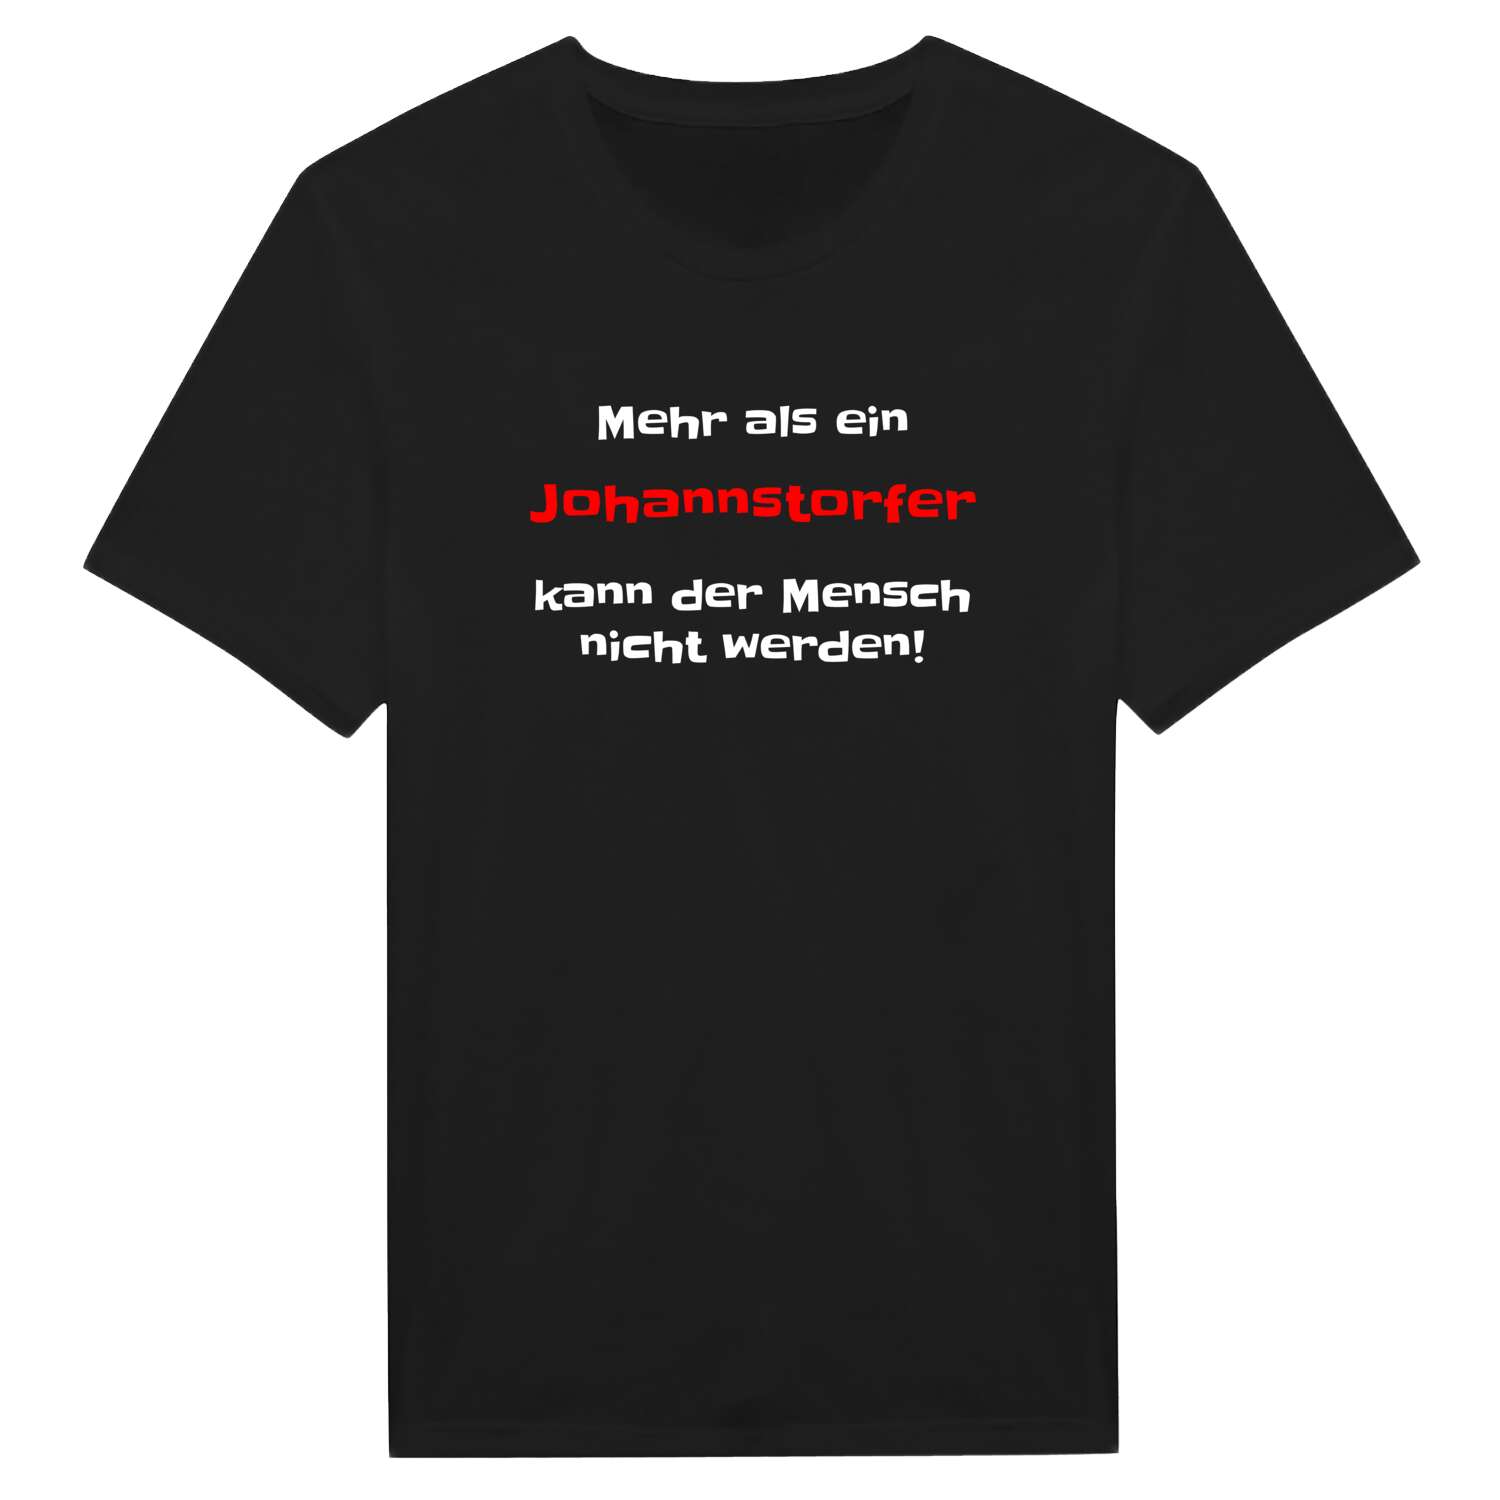 Johannstorf T-Shirt »Mehr als ein«